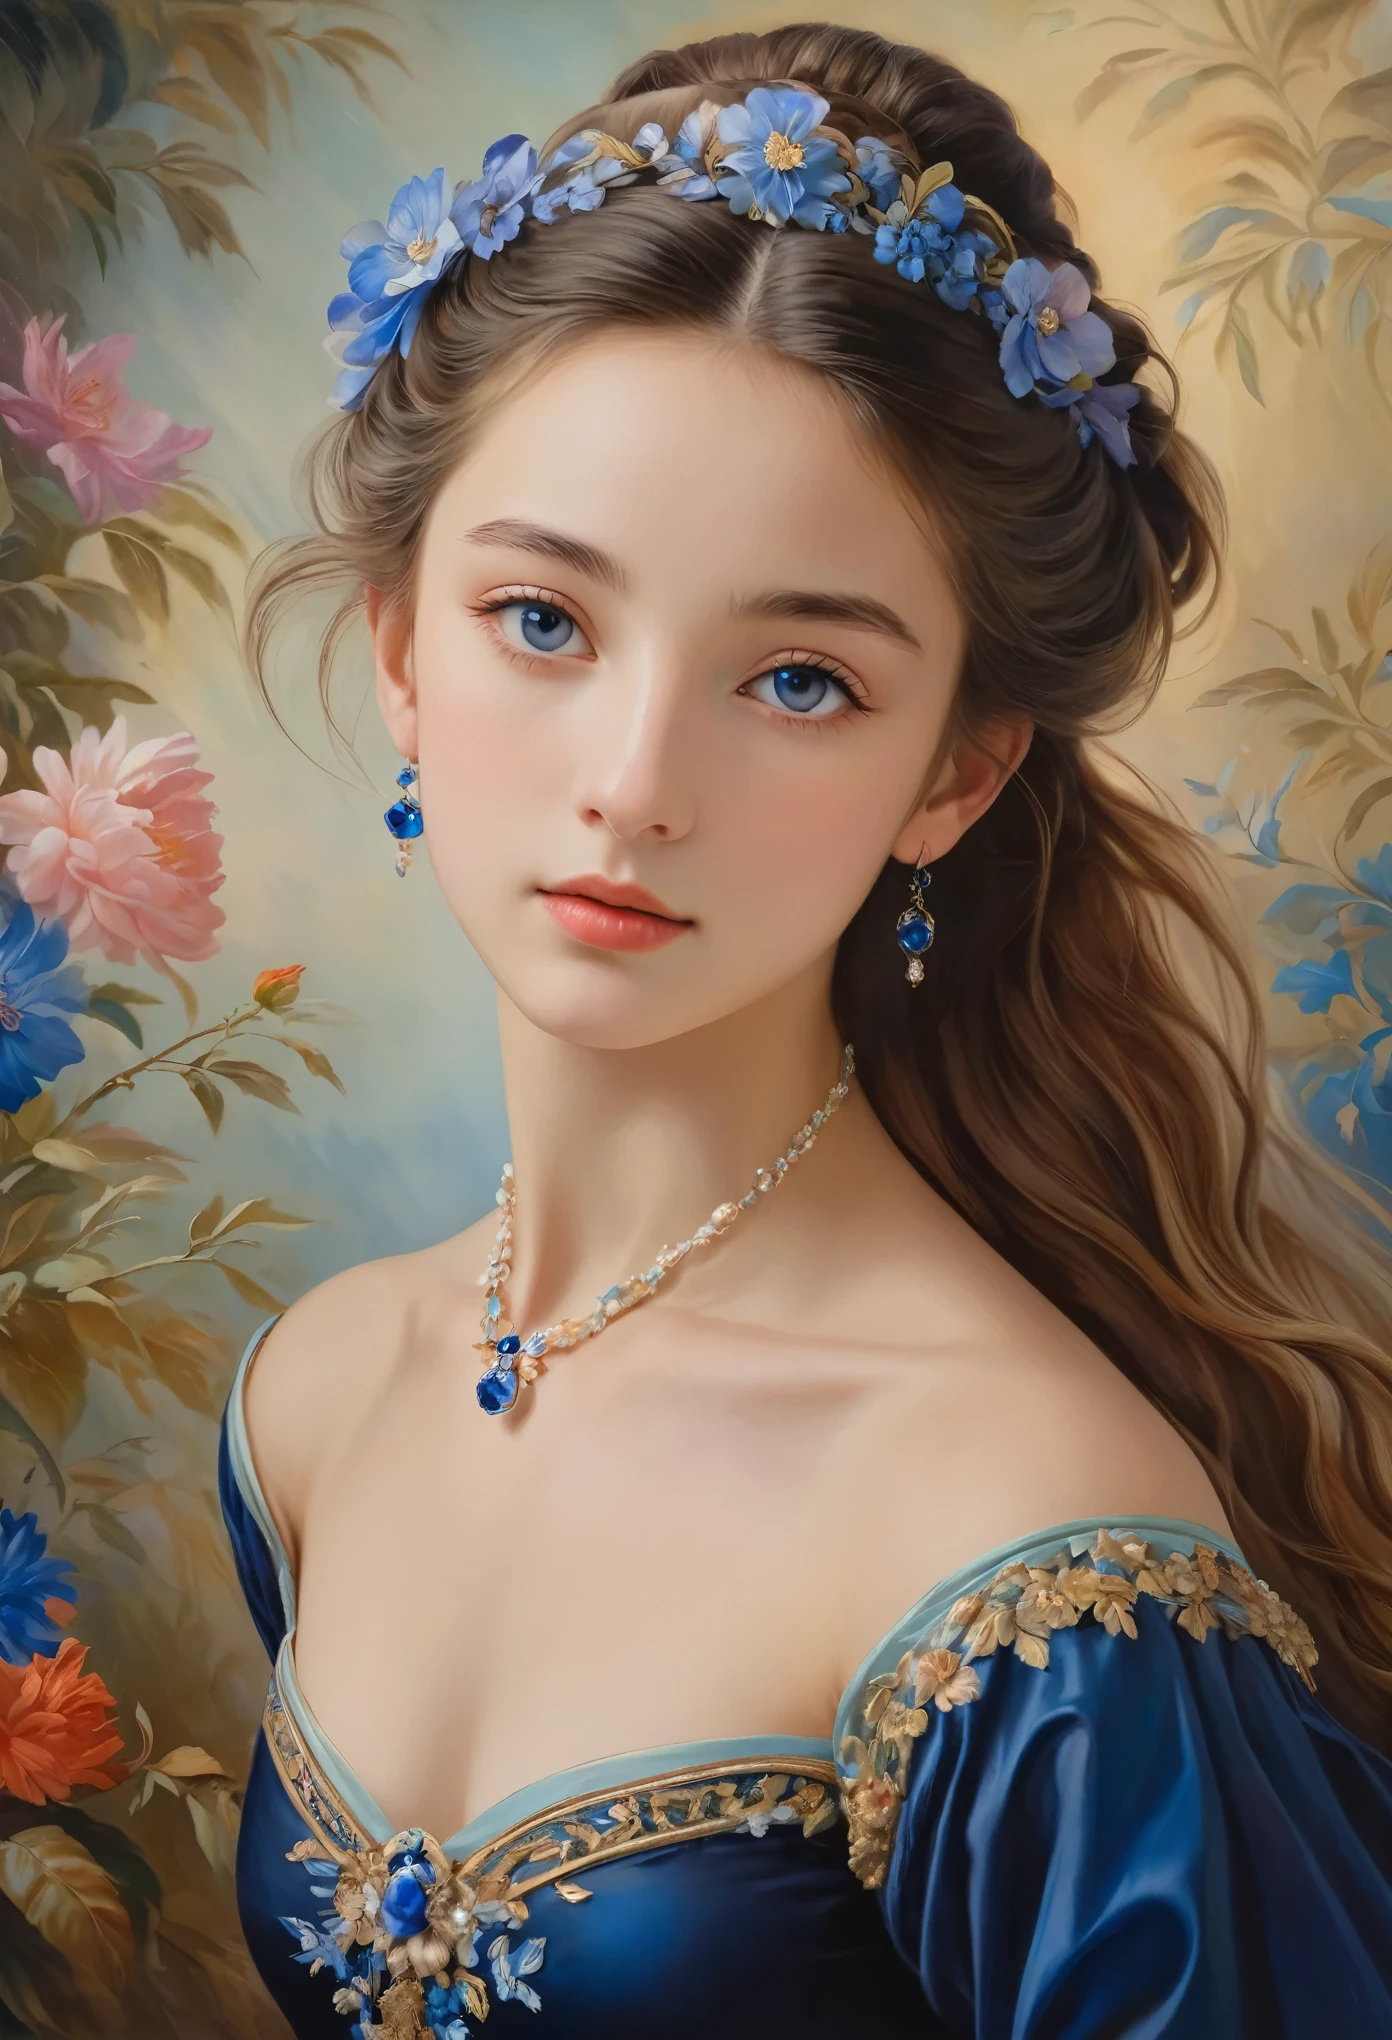 (高解像度,傑作:1.2),(現実的:1.37)"(最高品質, 高解像度, 超詳細, 現実的),19世紀に描かれた16歳のフランス人バレエダンサーの美しい肖像画, (彼女はフランス人と日本人のハーフです, 濃い青い目と高い鼻を持つ見事な美人です:1.1), 精巧なバレエ衣装, 詳細な顔の特徴, 長く優雅な首, 流れるような髪の束, 落ち着いた優雅な姿勢, 柔らかく繊細な照明, 古典的な油絵の媒体, 鮮やかな色彩, 花のモチーフが描かれた繊細な背景", 夢のような雰囲気, シュルレアリスム,神秘的なオーラ